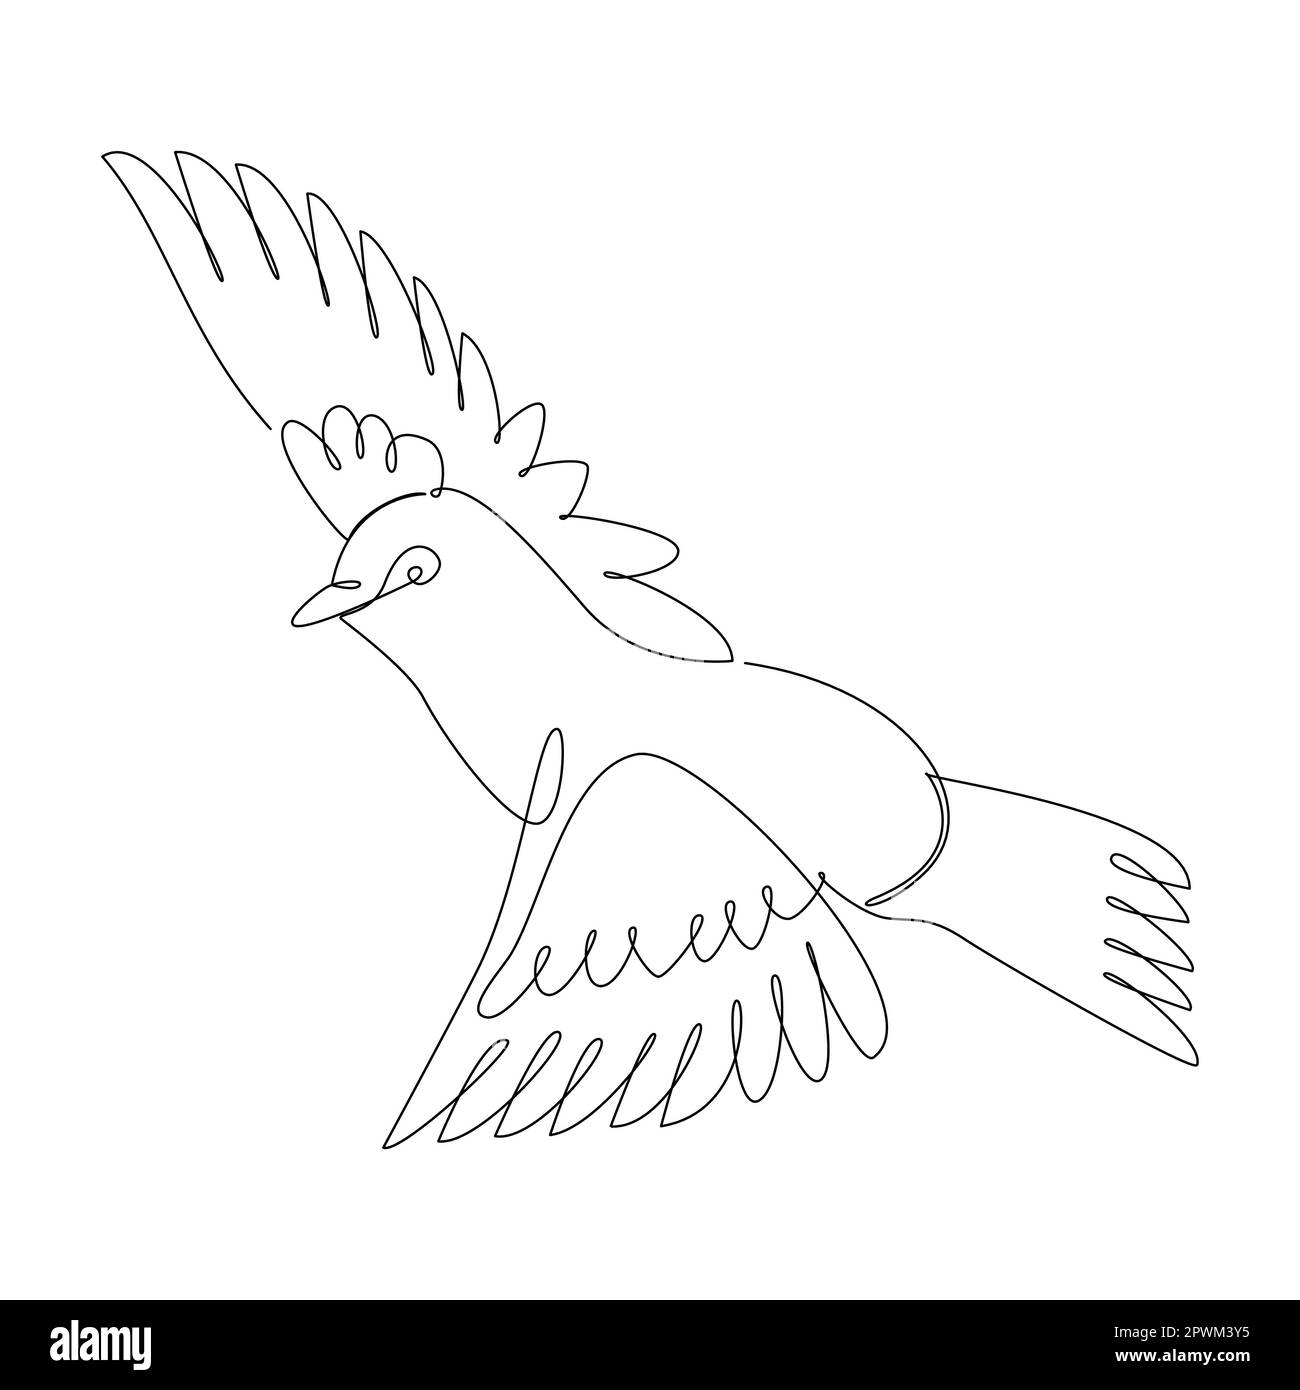 Dessin continu d'une ligne simple d'icône d'oiseau en silhouette sur fond blanc. Linéaire stylisé. Illustration de Vecteur